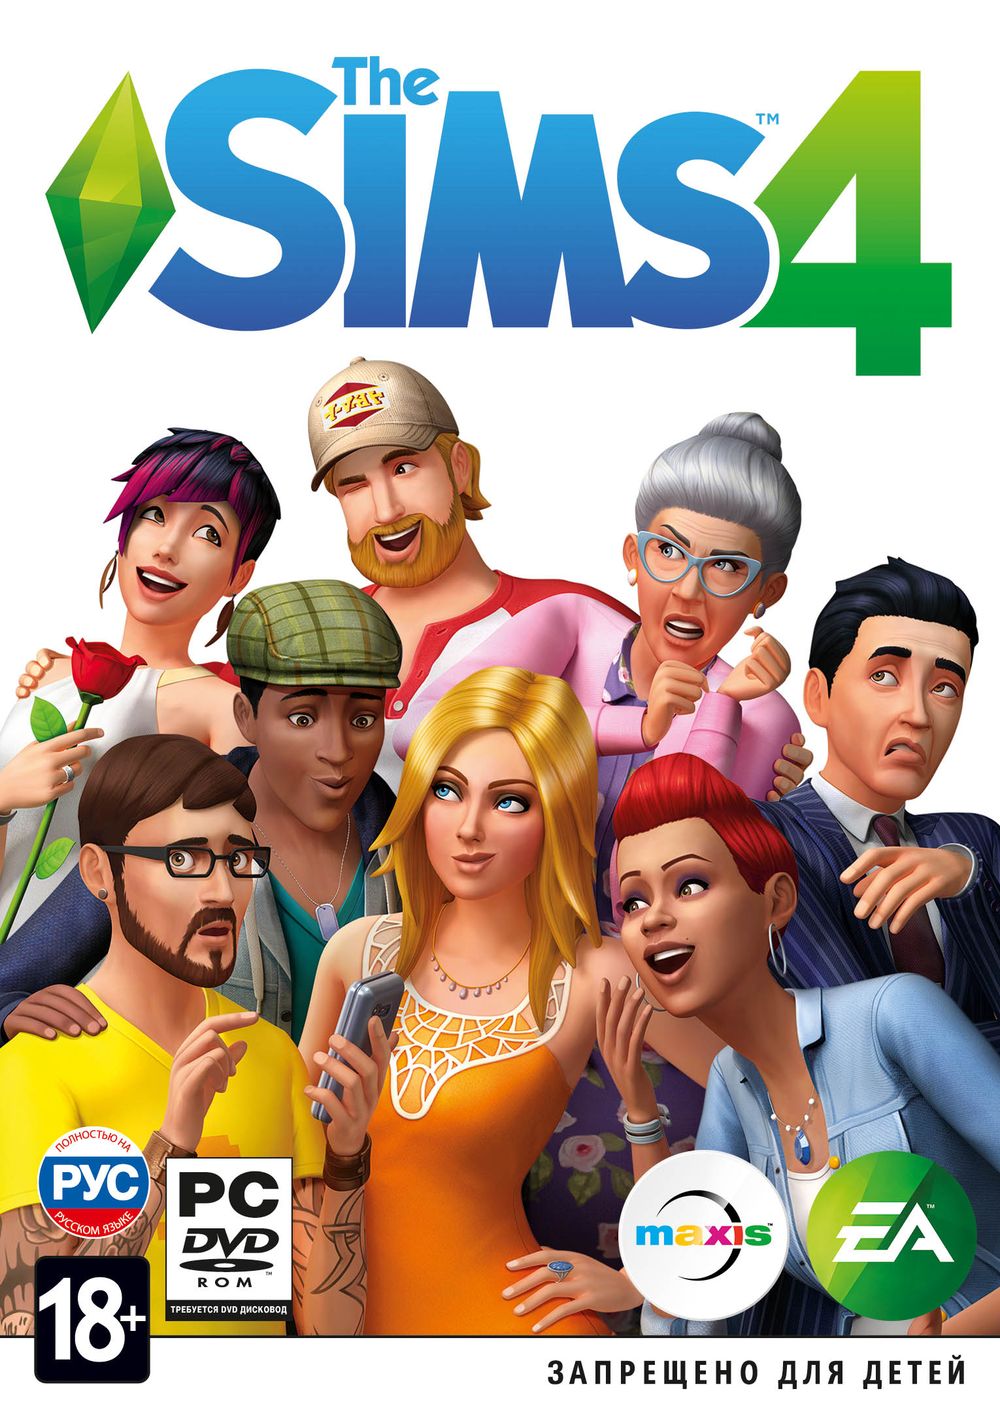 Скачать The Sims 4: Deluxe Edition Торрент Бесплатно От R.G. Механики